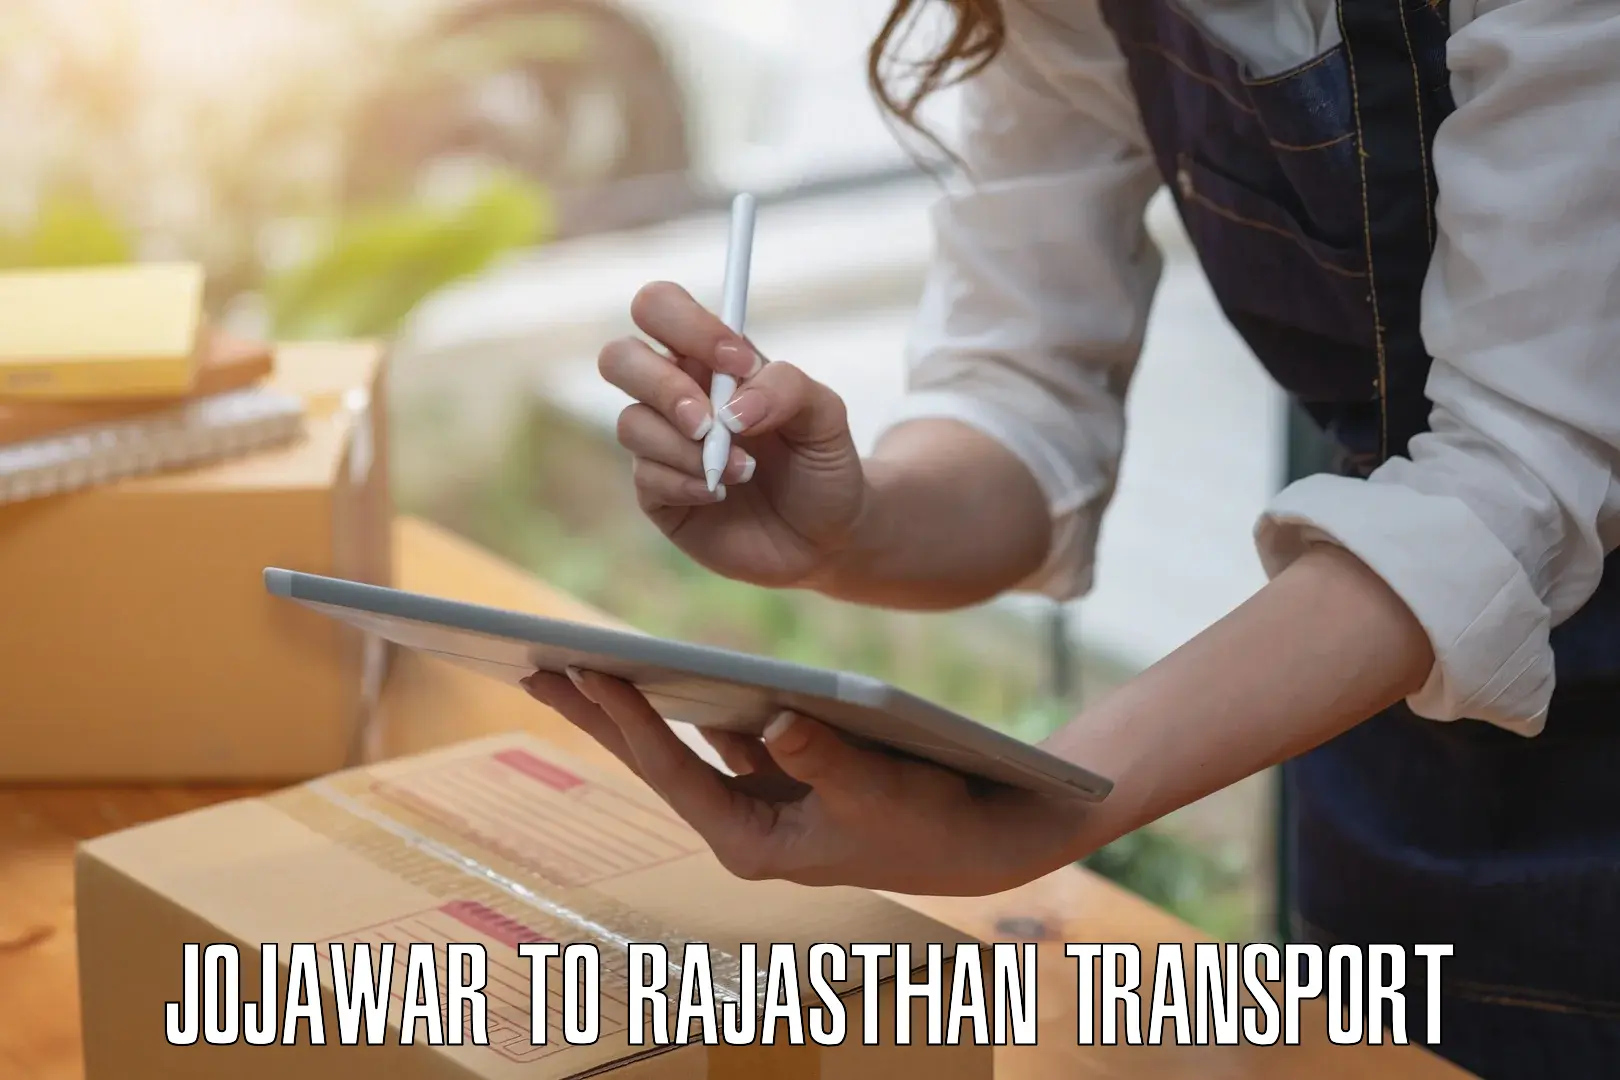 Two wheeler parcel service Jojawar to Jojawar